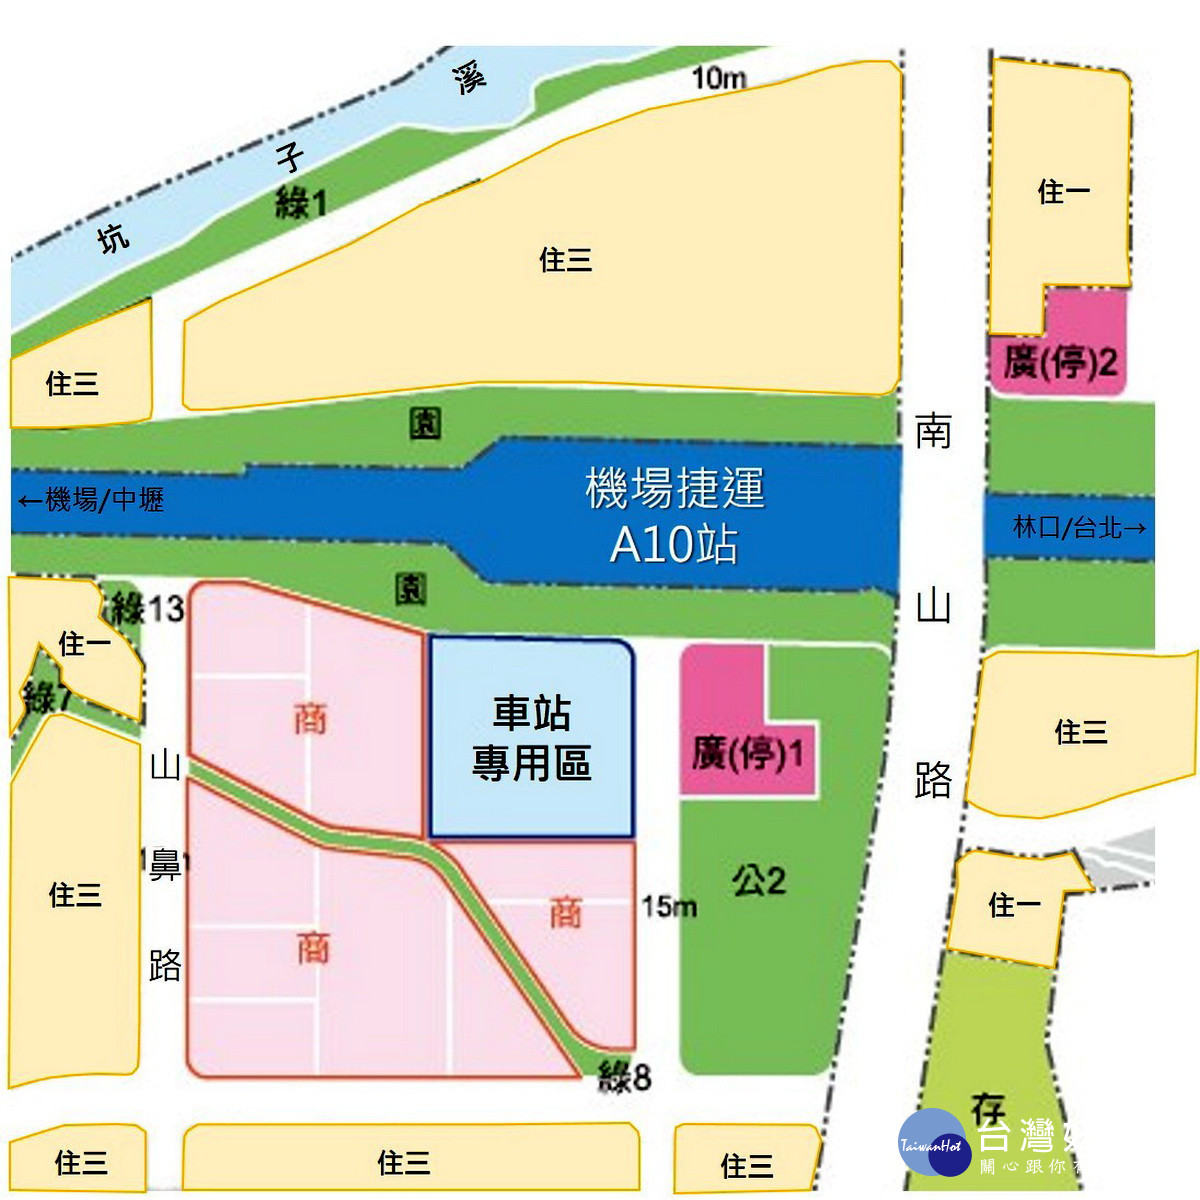 A10車站土地開發案基地位置圖。